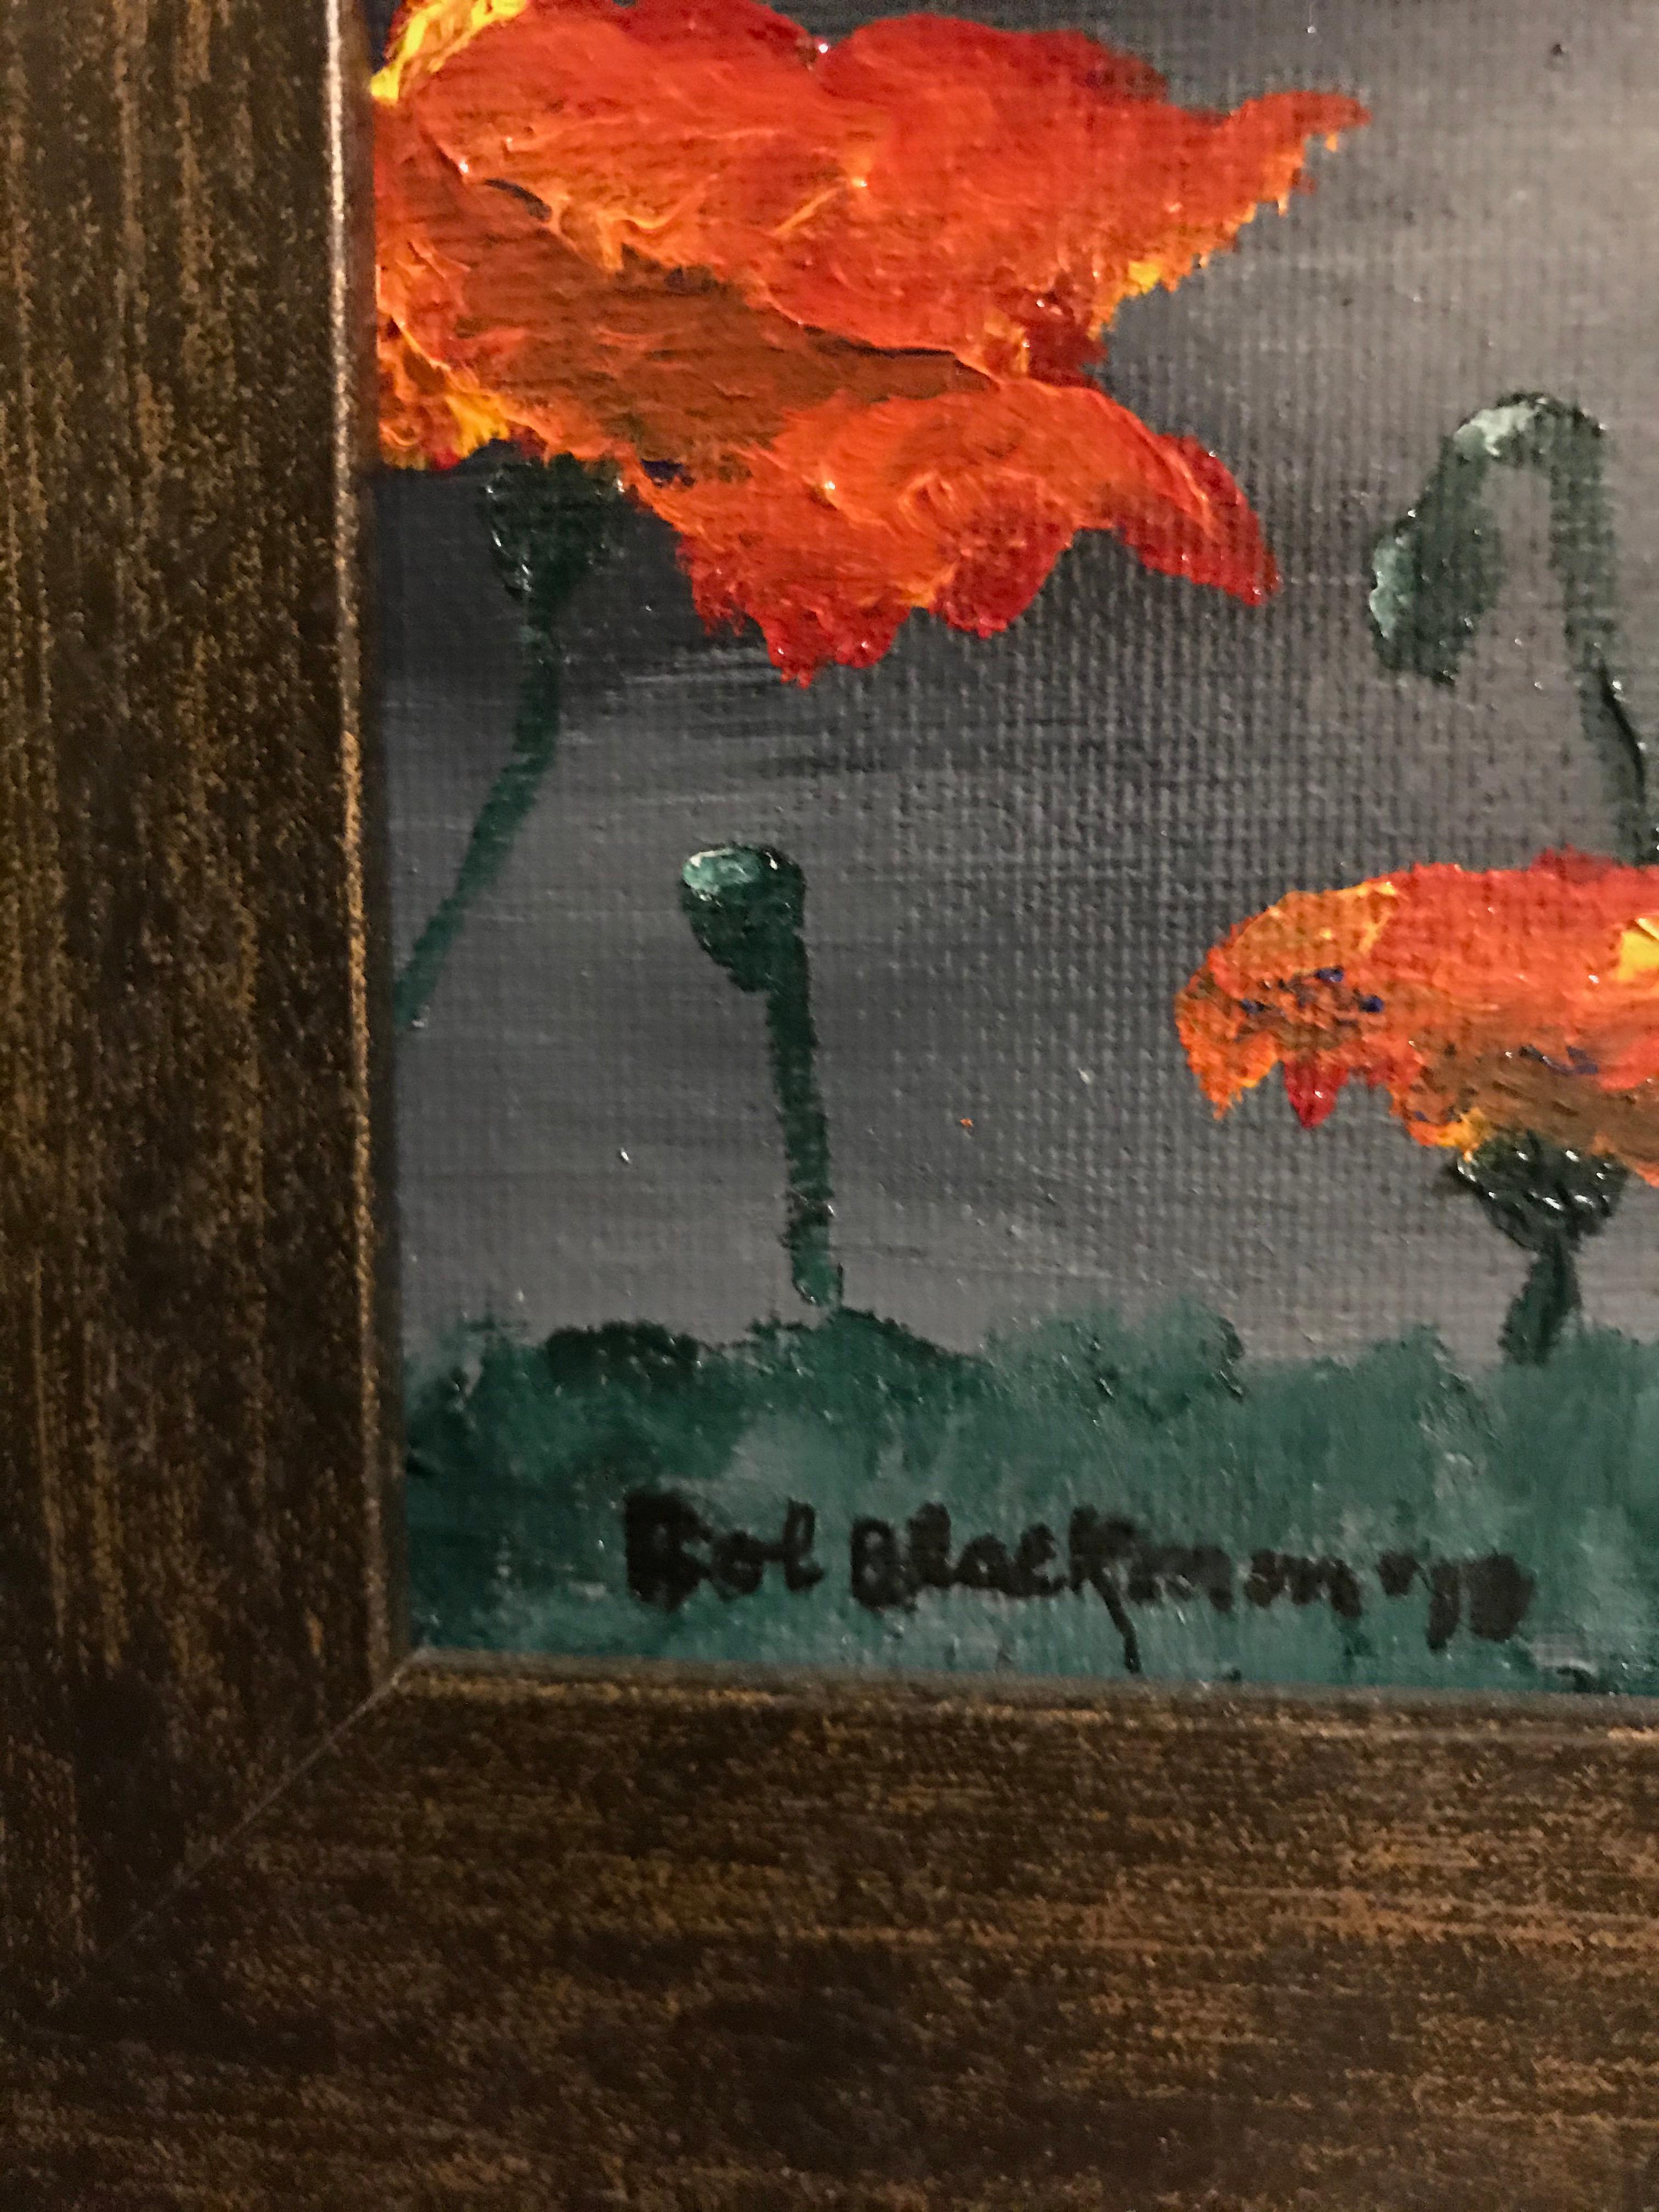 Dieses Stillleben in Öl auf Leinwand zeigt eine Nahaufnahme eines Mohnblumenfeldes, das in seiner rot-orangen Farbe leuchtet. Die Mohnblumen gewinnen an Bedeutung, wenn sie sich vor einem Hintergrund in verschiedenen Grautönen abheben, der an einen